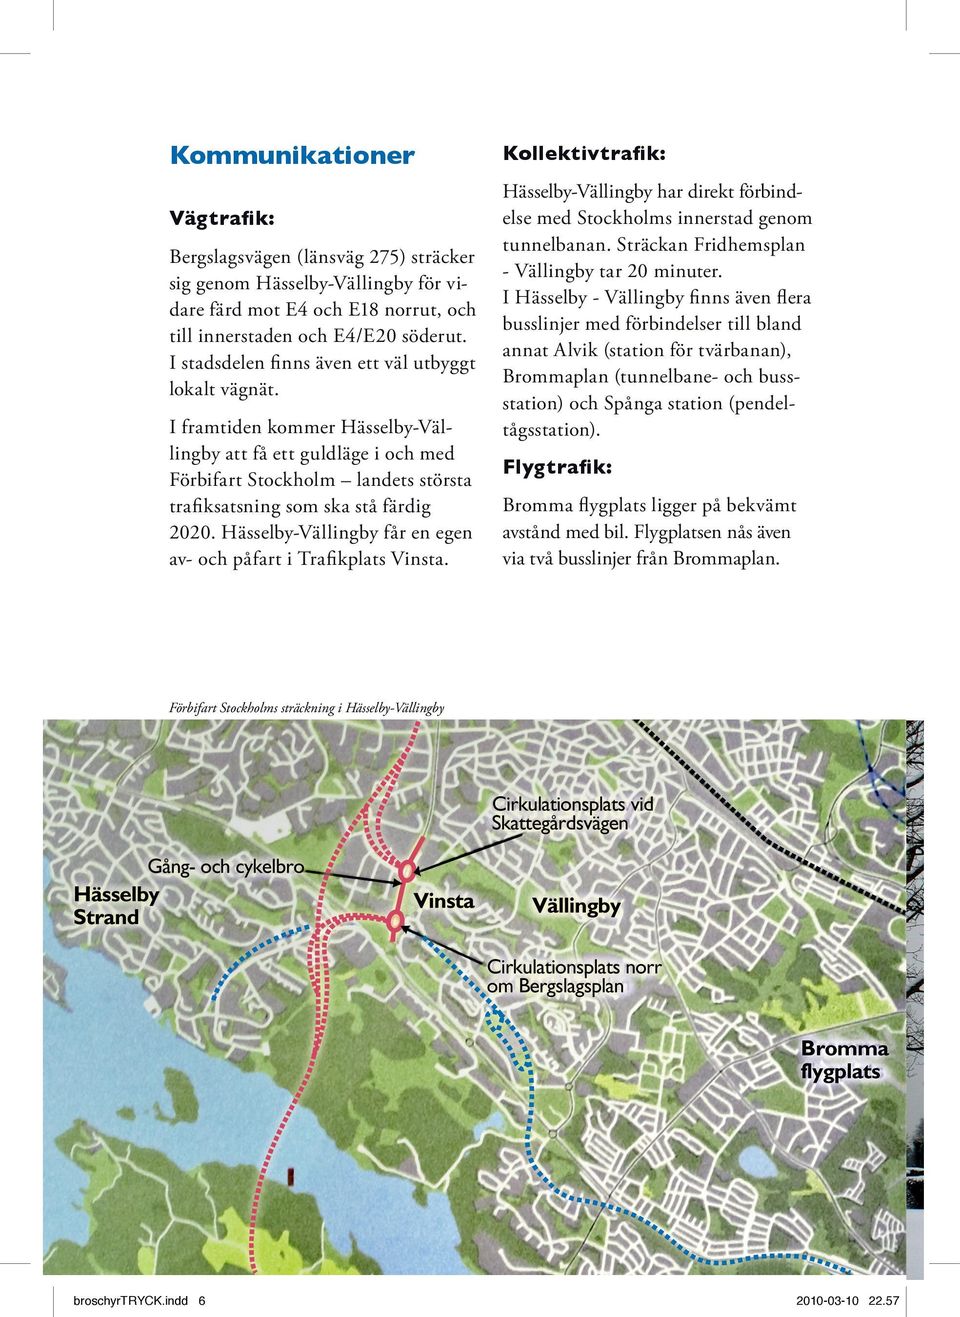 Hässelby-Vällingby får en egen av- och påfart i Trafikplats Vinsta. Kollektivtrafik: Hässelby-Vällingby har direkt förbindelse med Stockholms innerstad genom tunnelbanan.